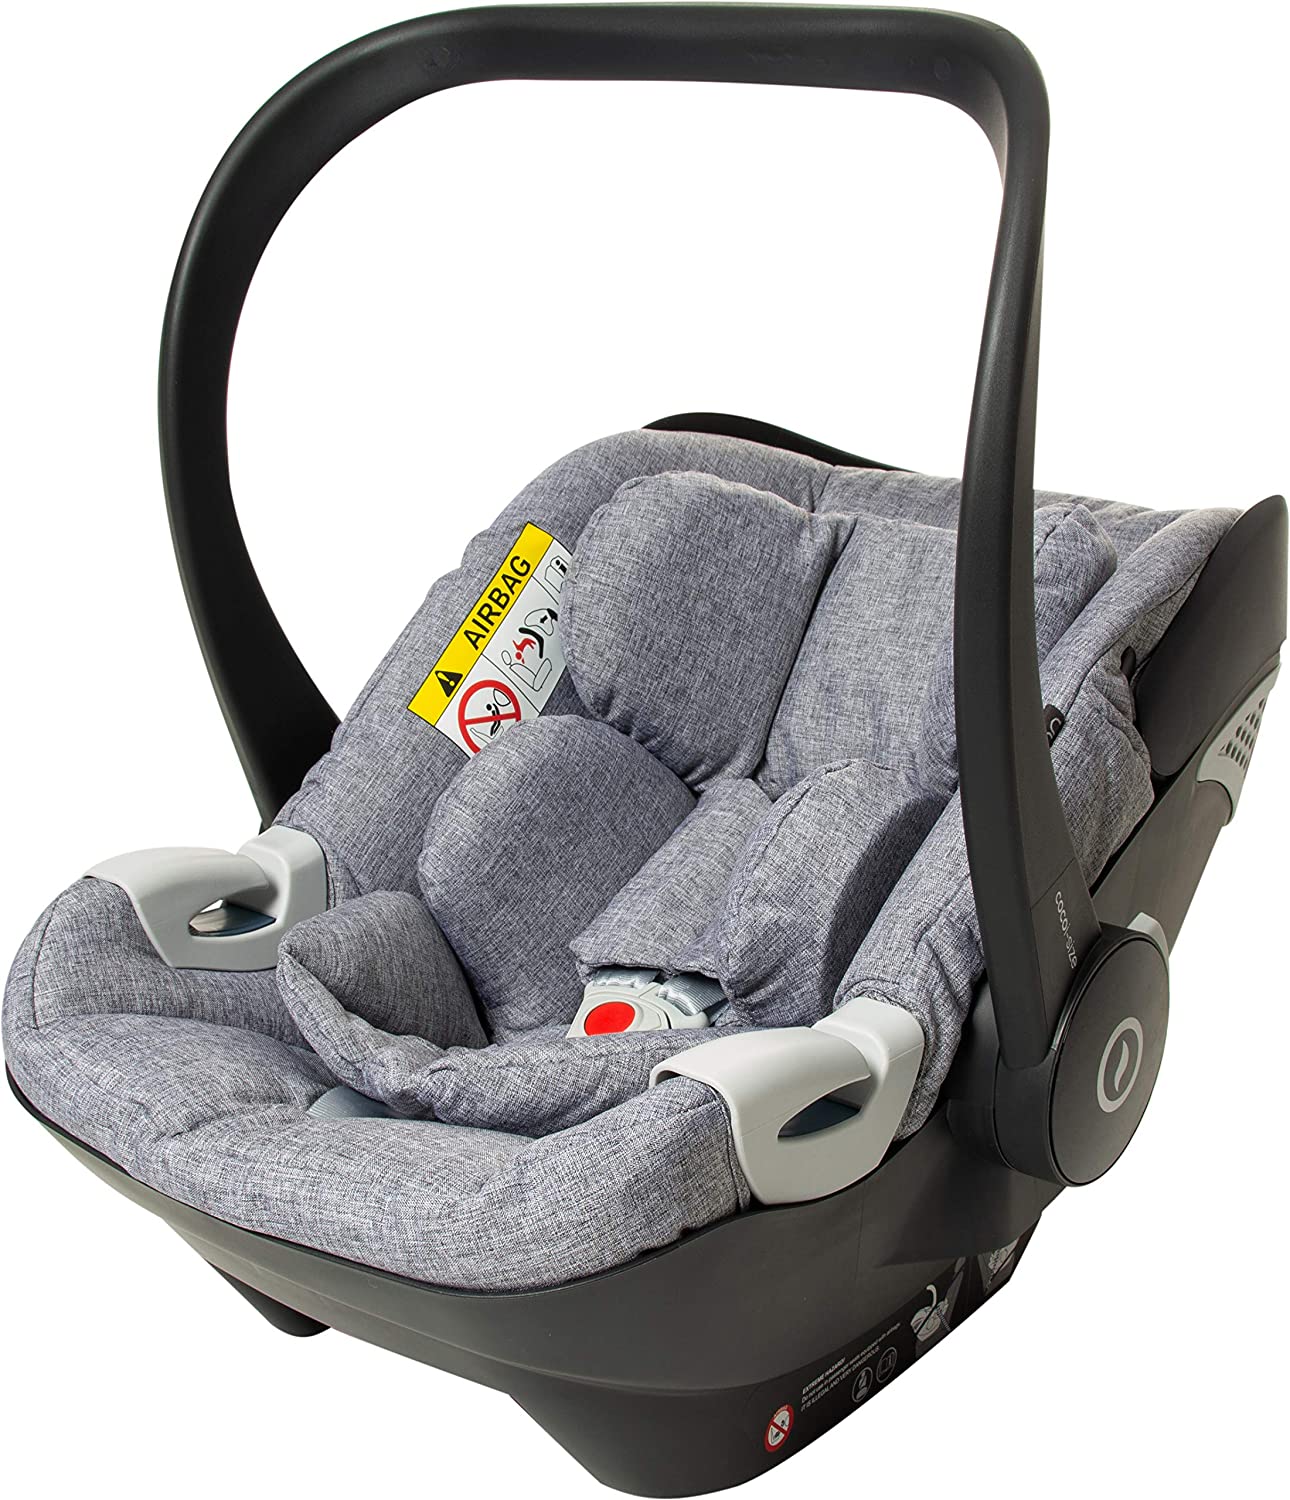 Osann Coco i-Size, Baby Car Seat 40 to 80 cm - Sarah Harrison - Heart